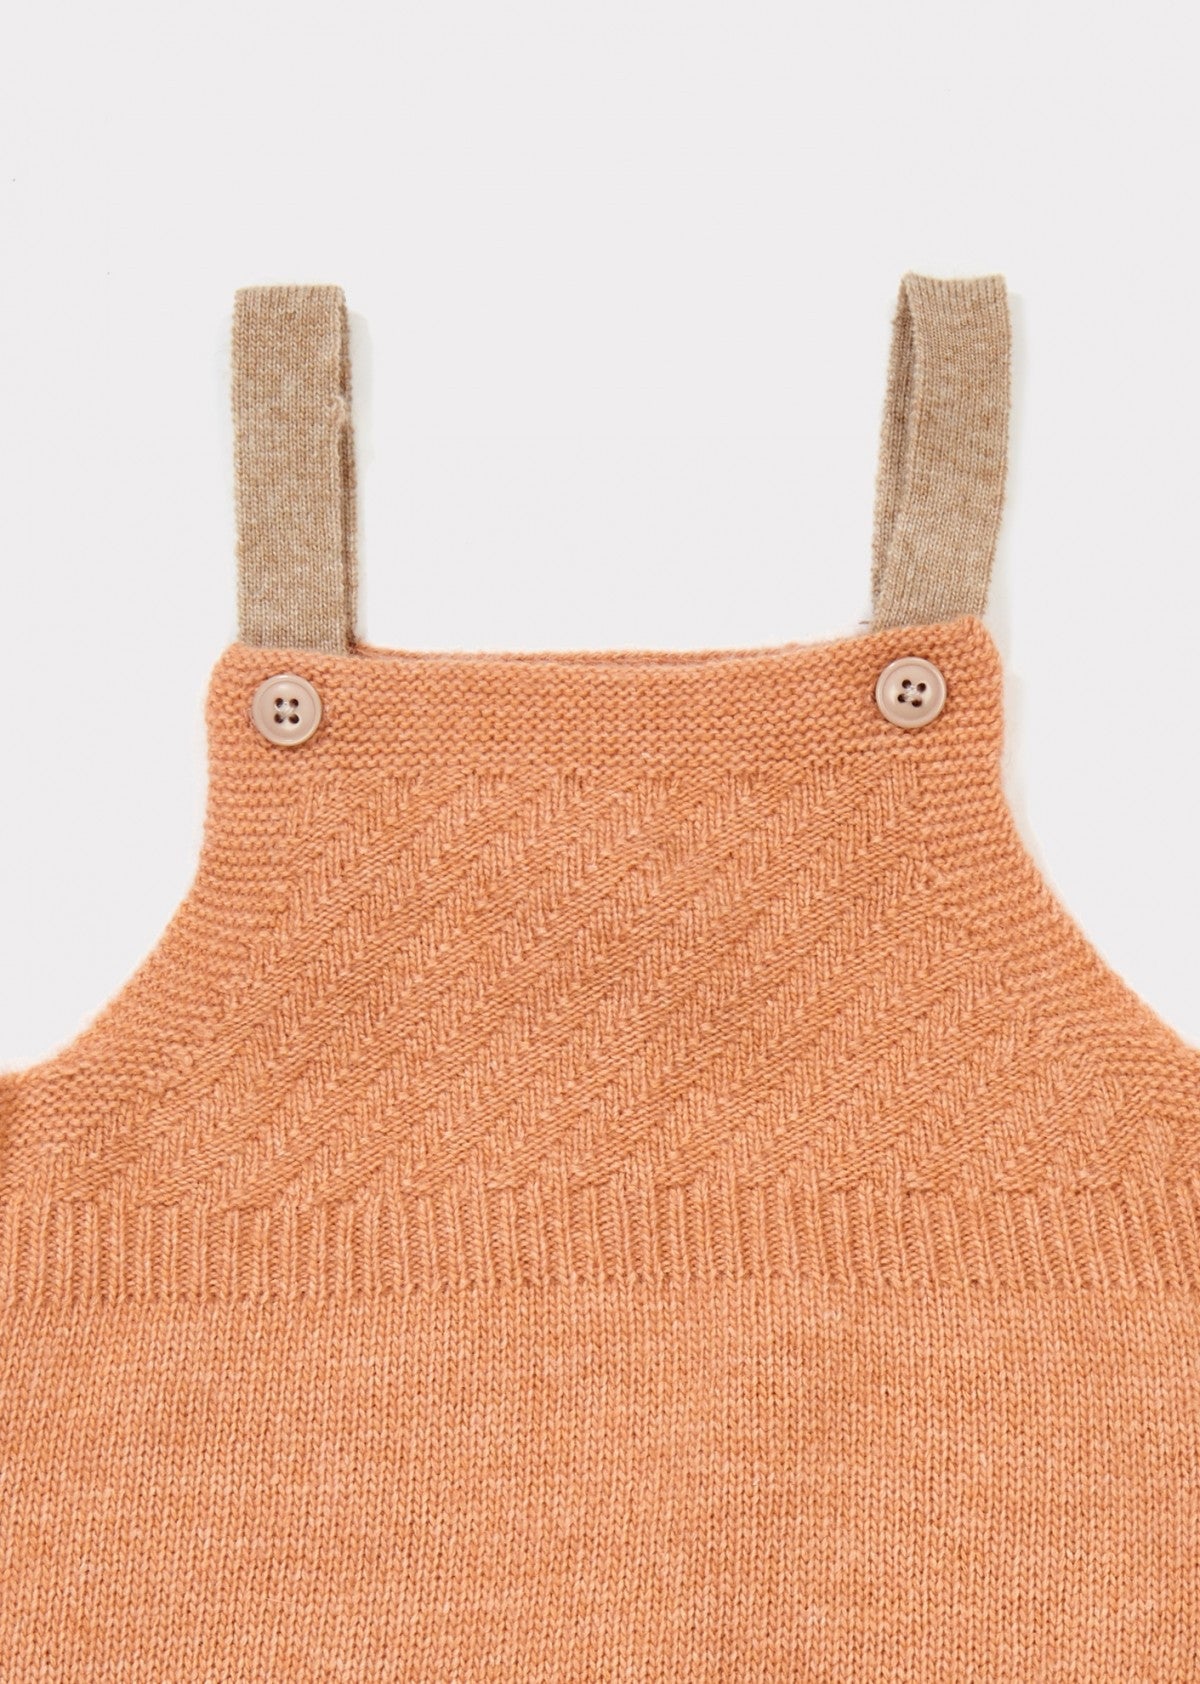 Baby Light Orange Knitted Romper